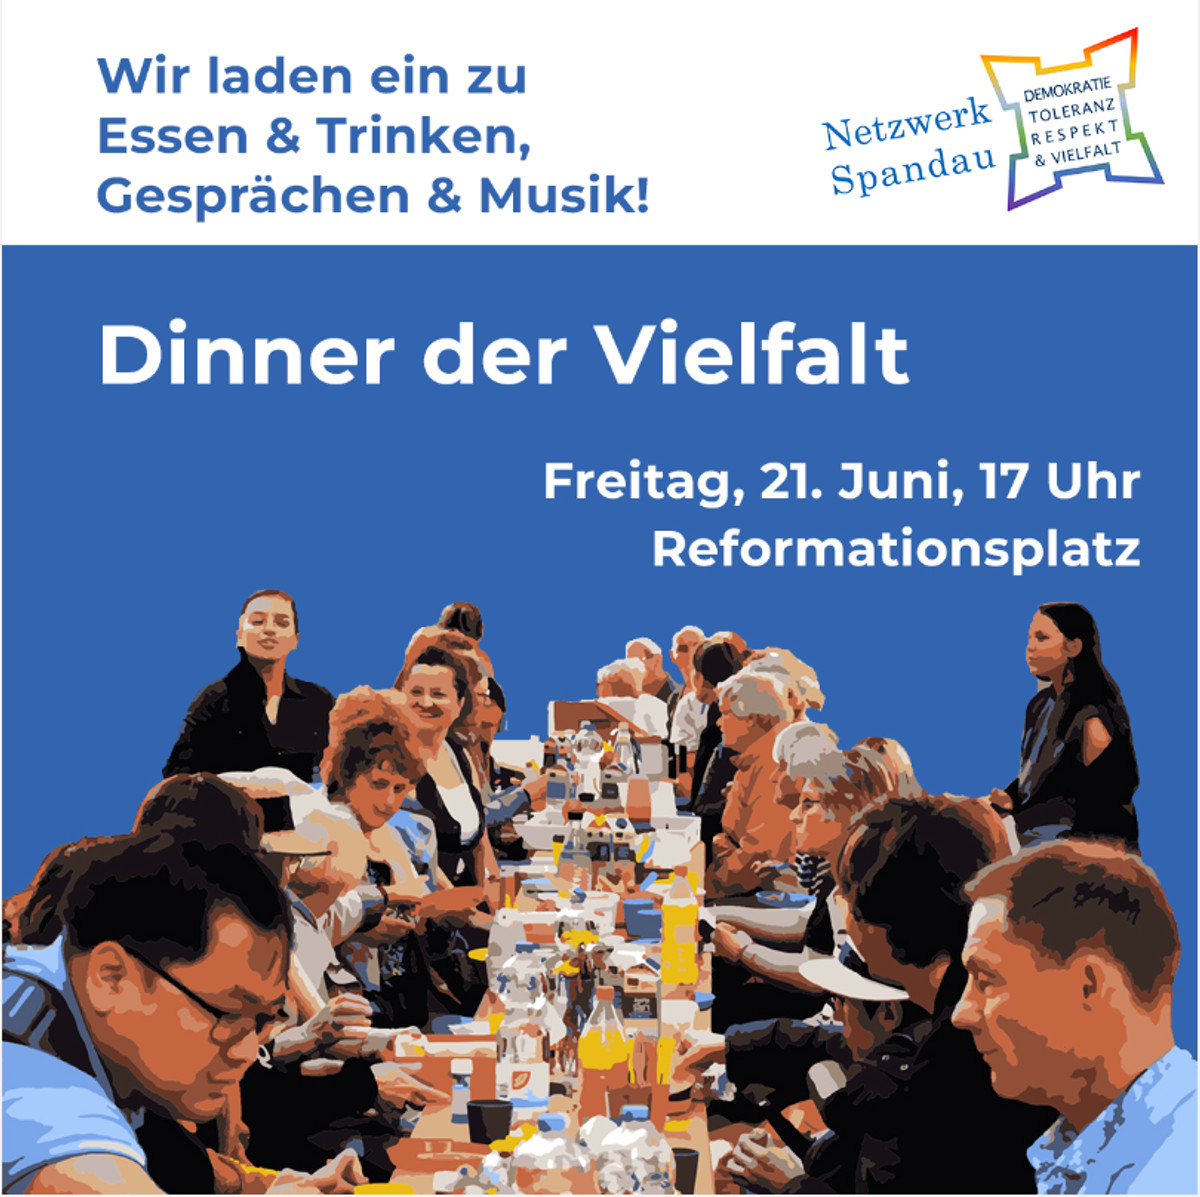 „Dinner der Vielfalt“ auf dem Reformationsplatz